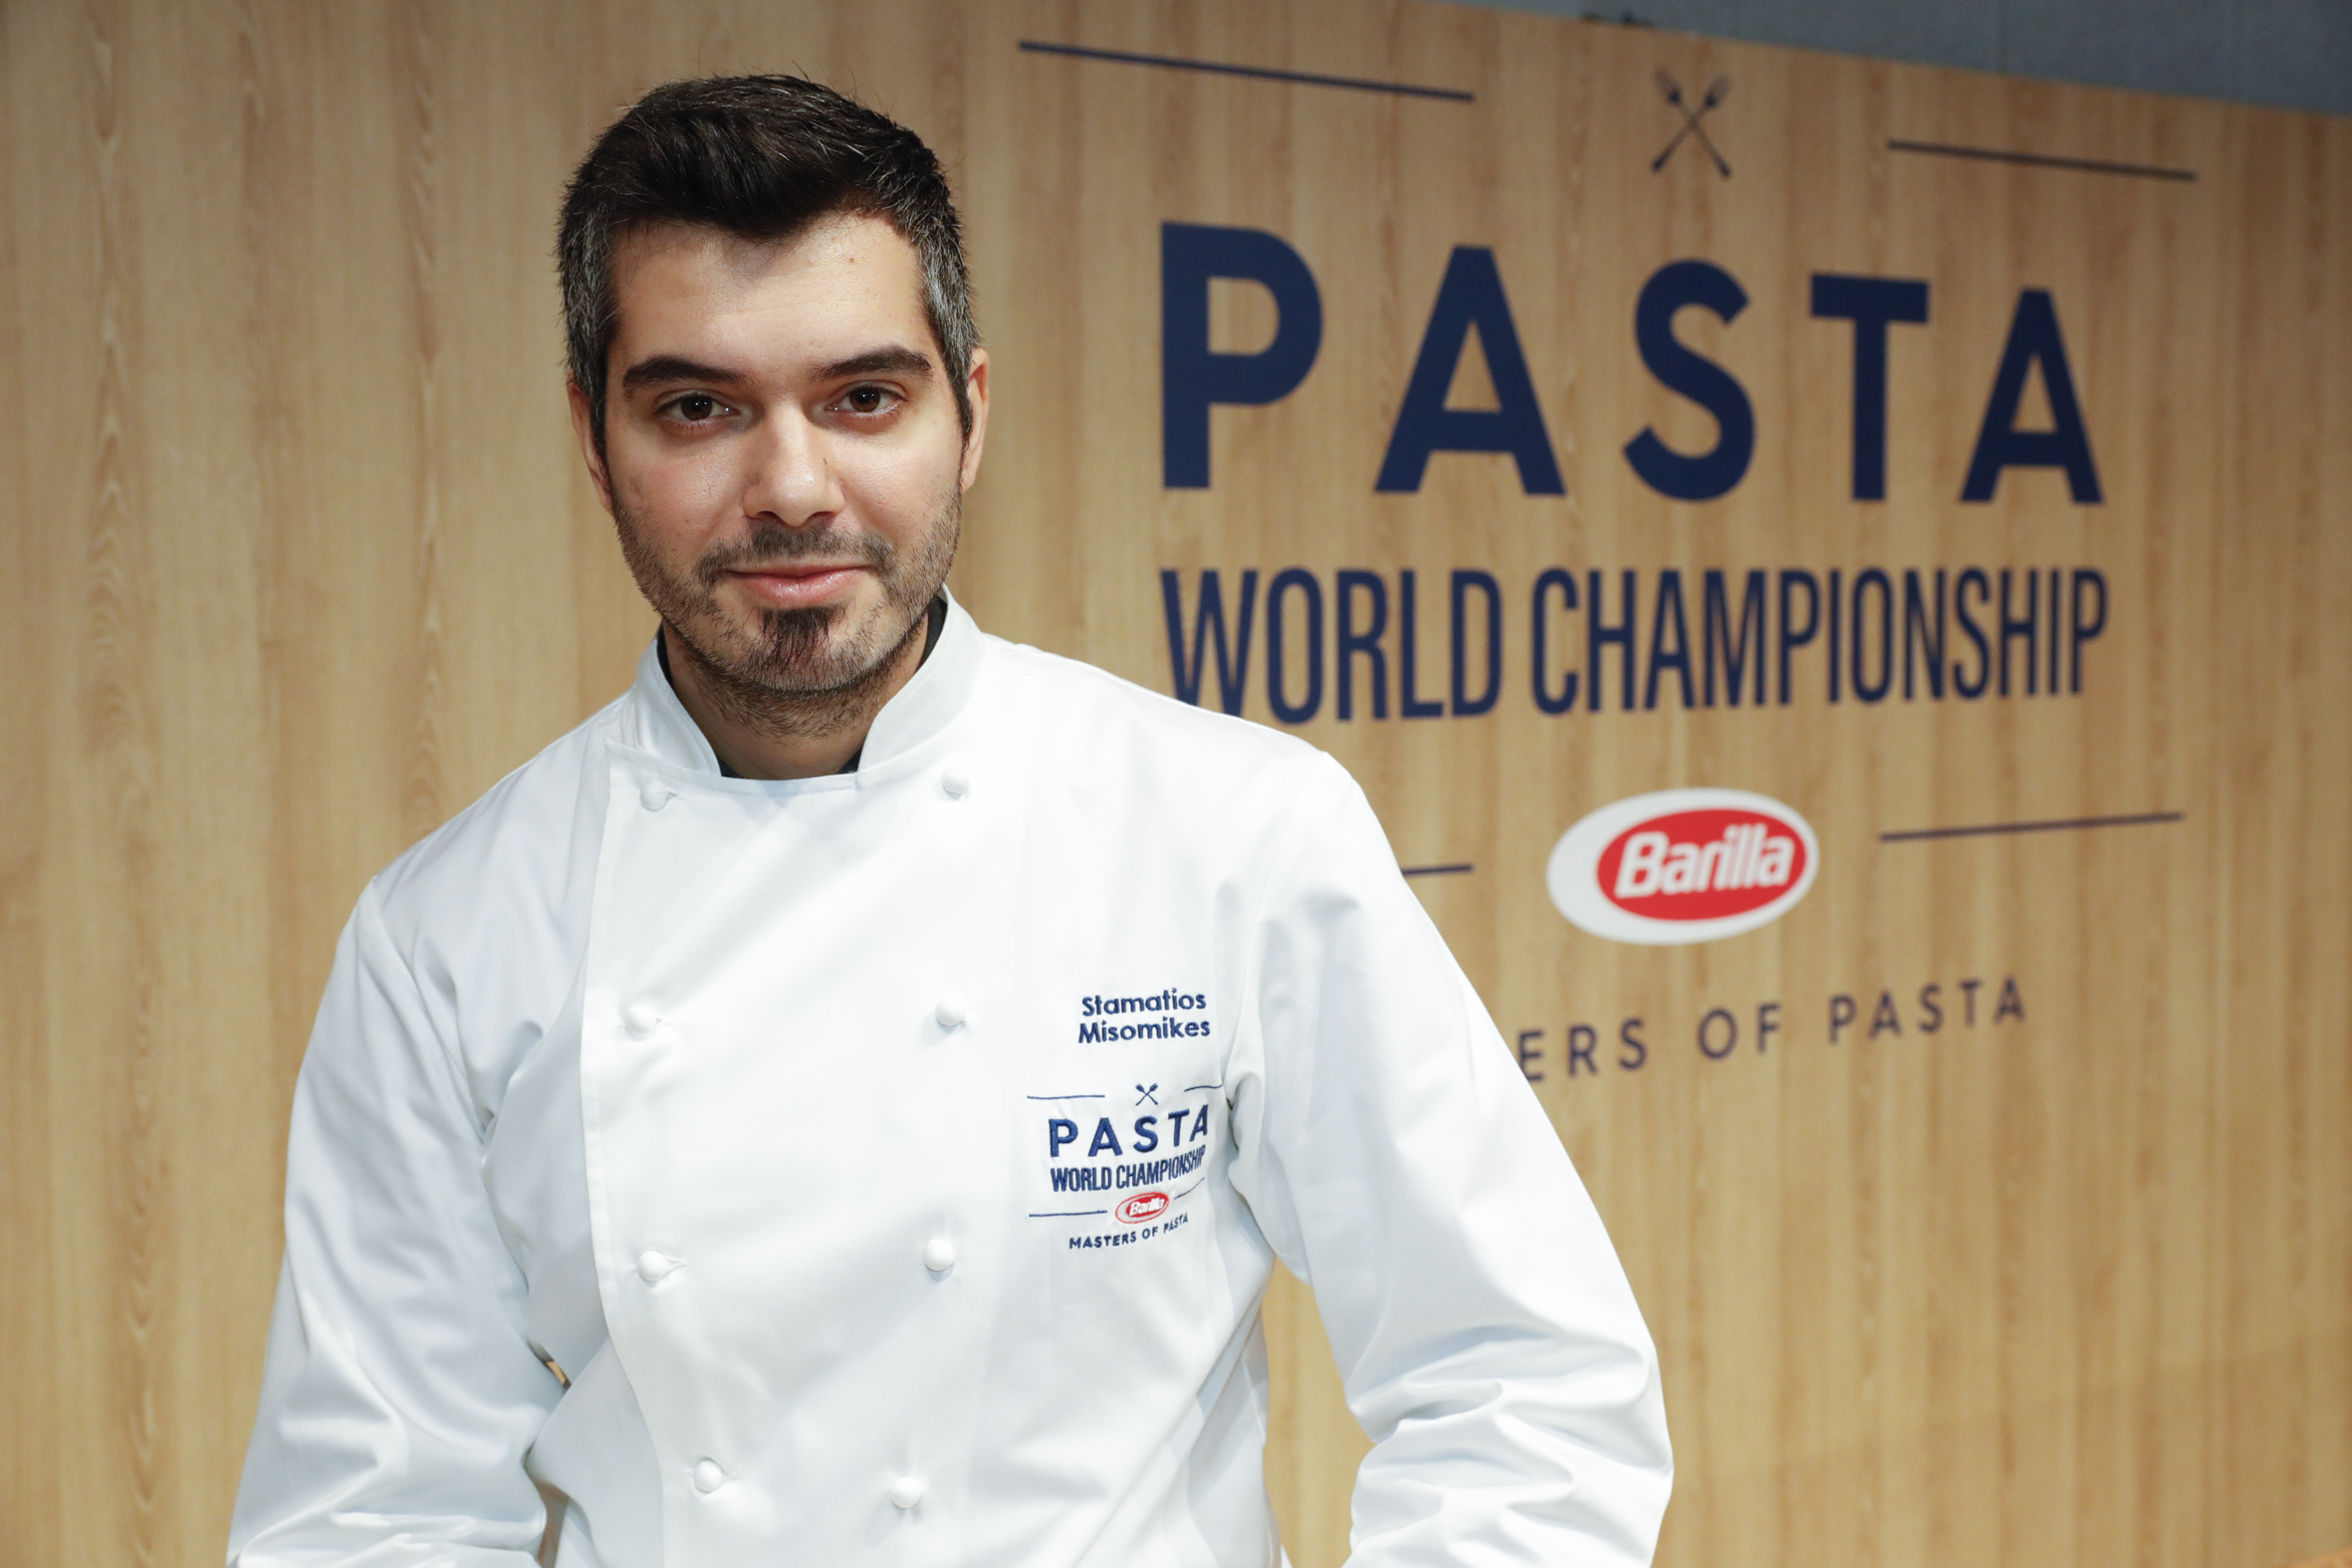 Αποτέλεσμα εικόνας για pasta world championship 2018